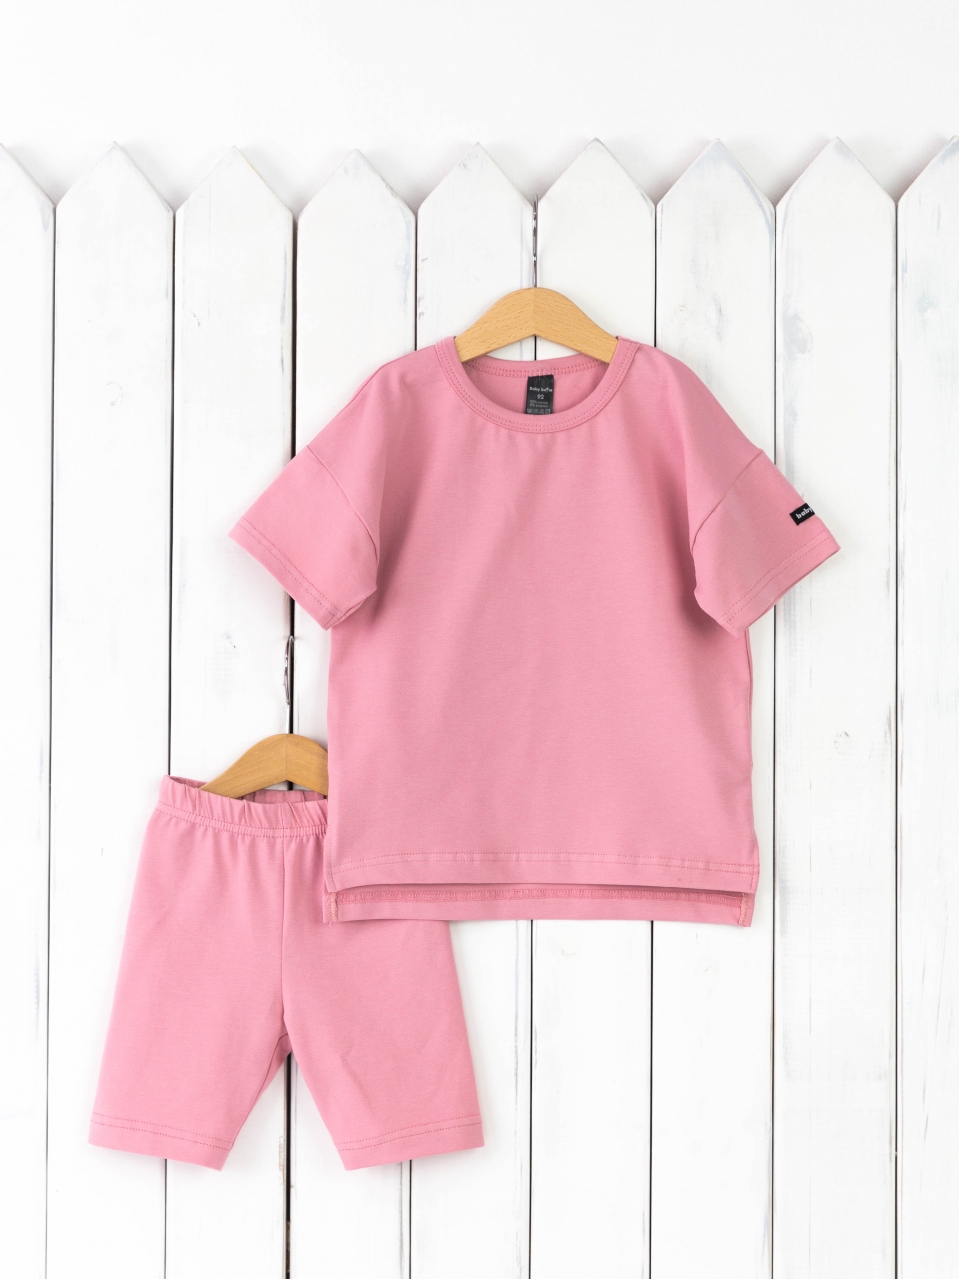 КД416/9-К Комплект детский р.116 футболка+легинсы/розовый зефир Бэби Бум